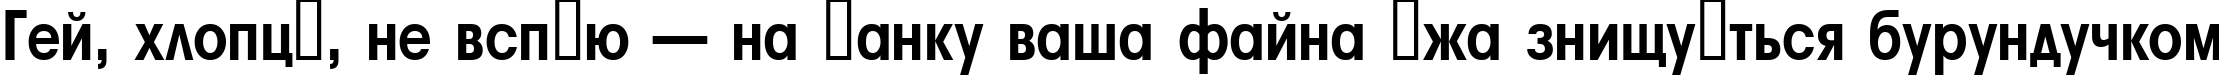 Пример написания шрифтом a_AvanteBsNr Bold текста на украинском